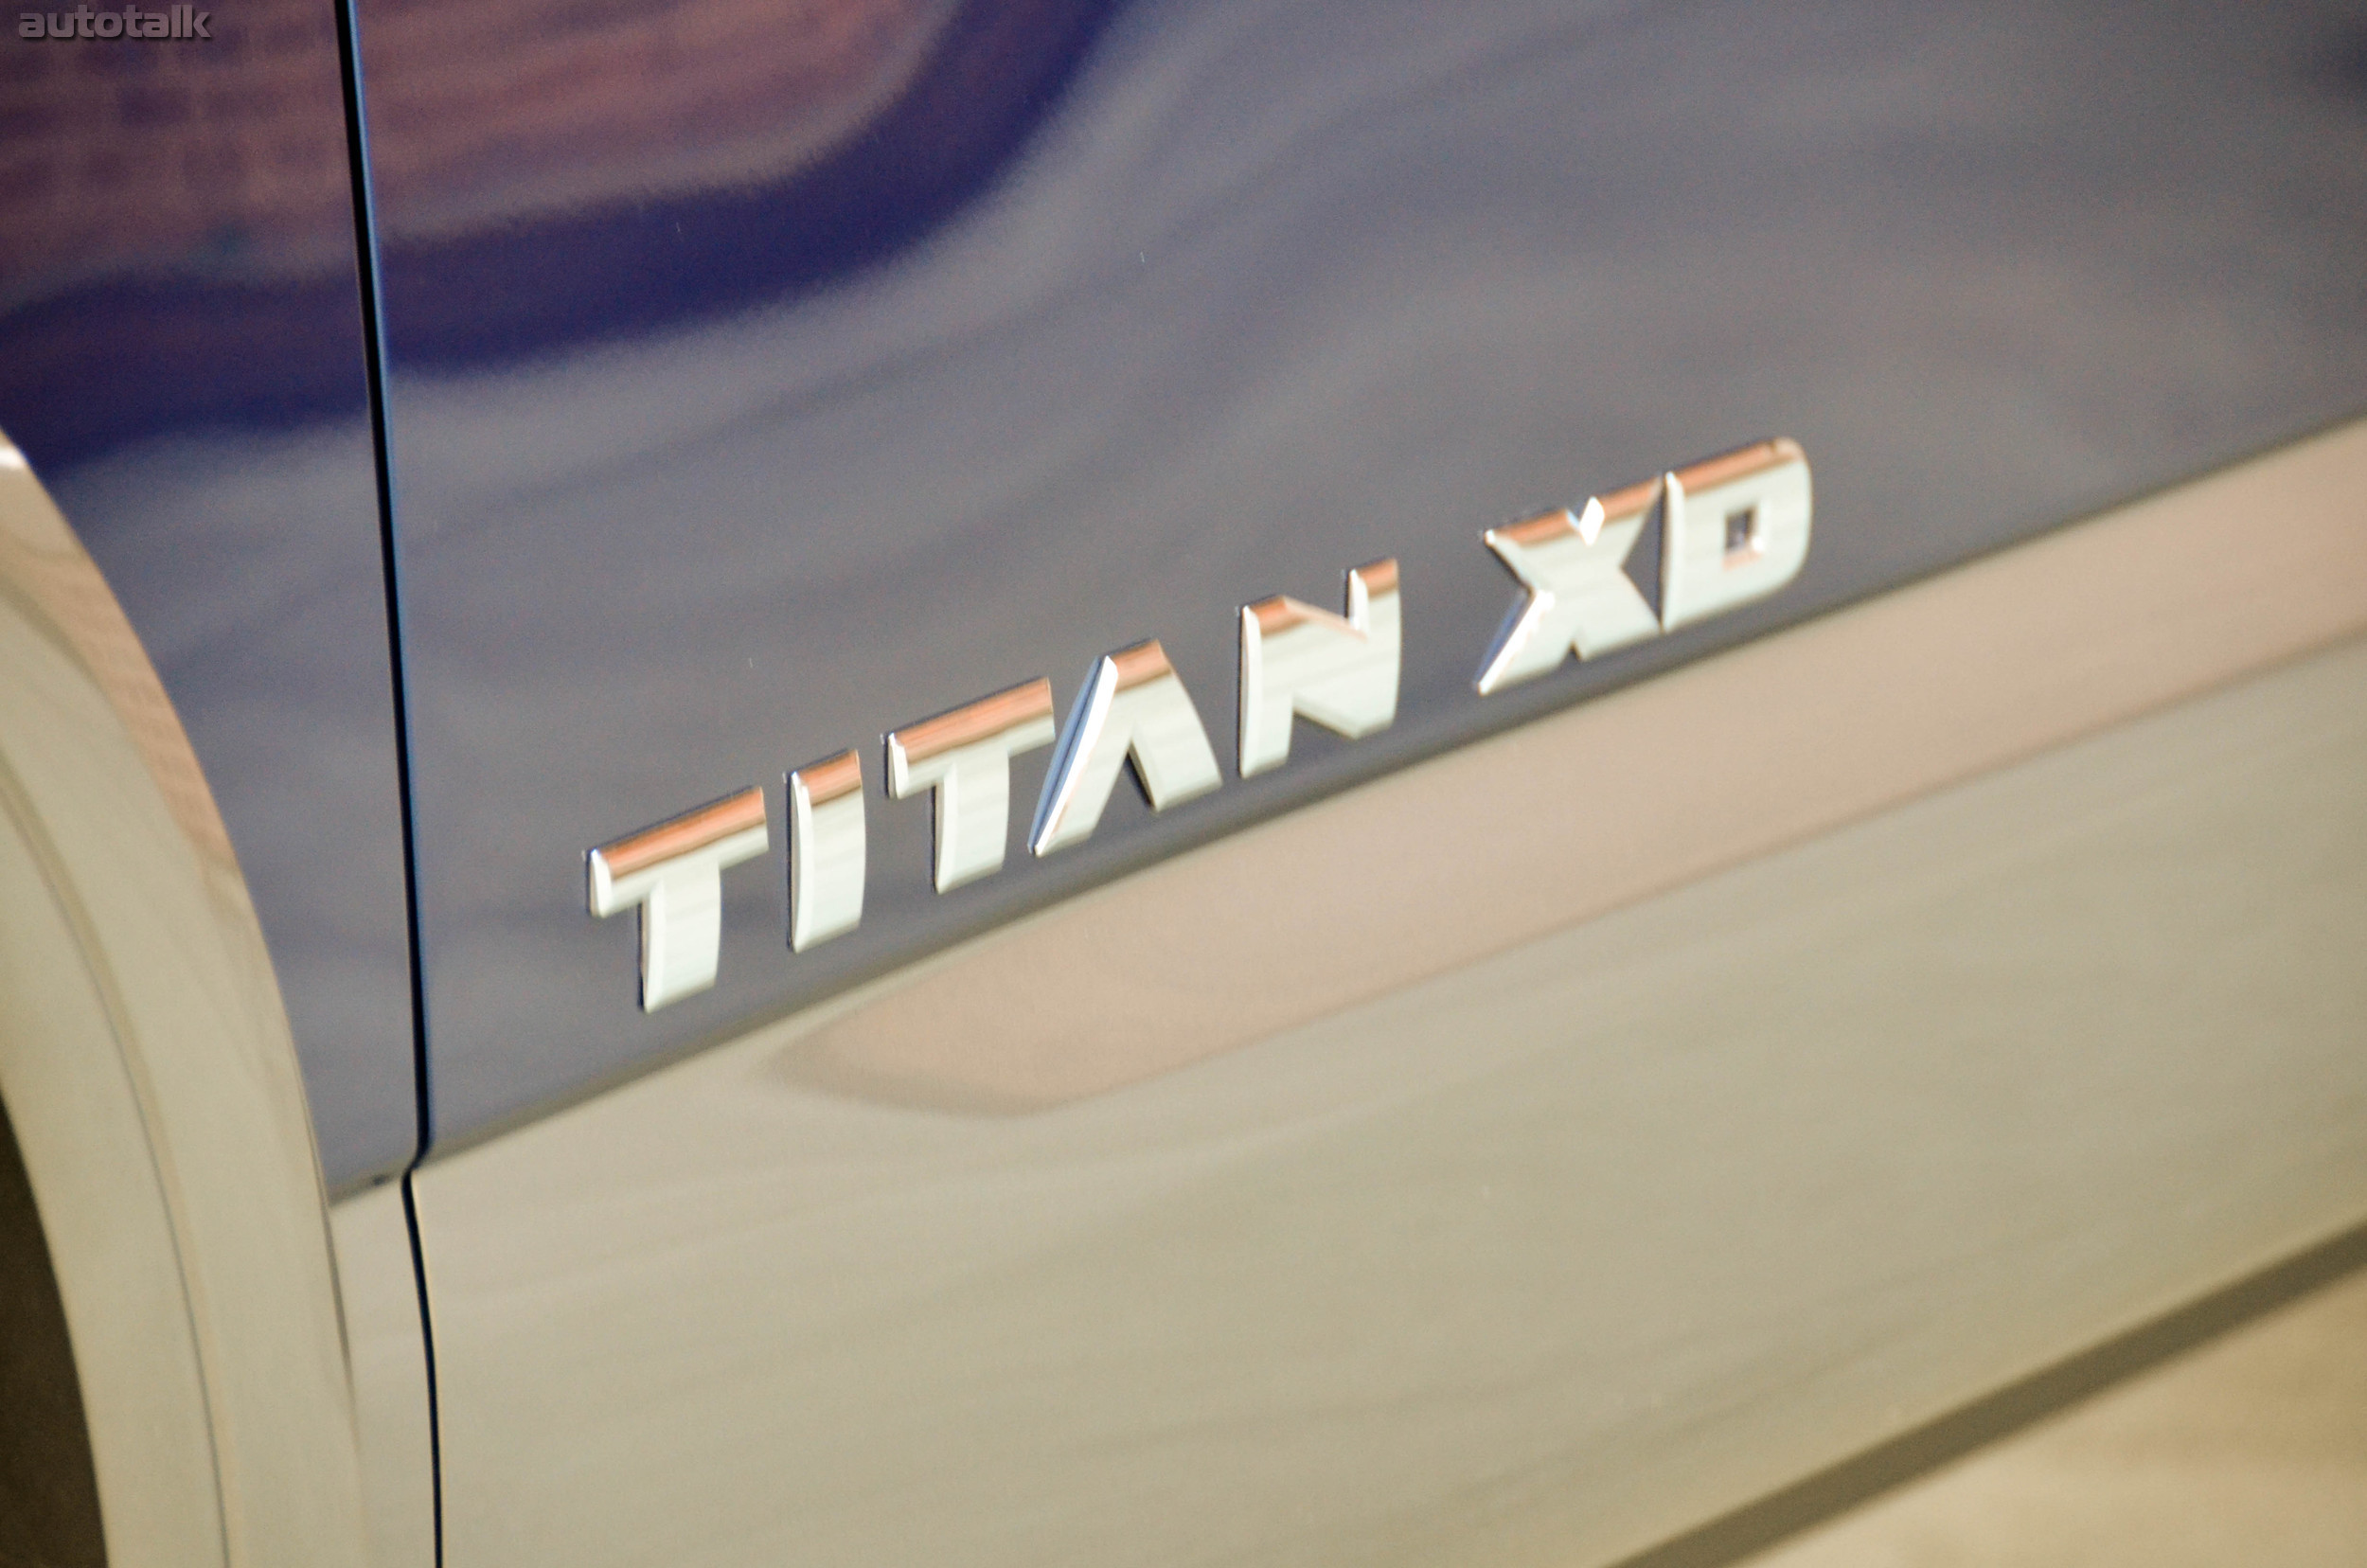 2016 Nissan Titan XD Diesel Review